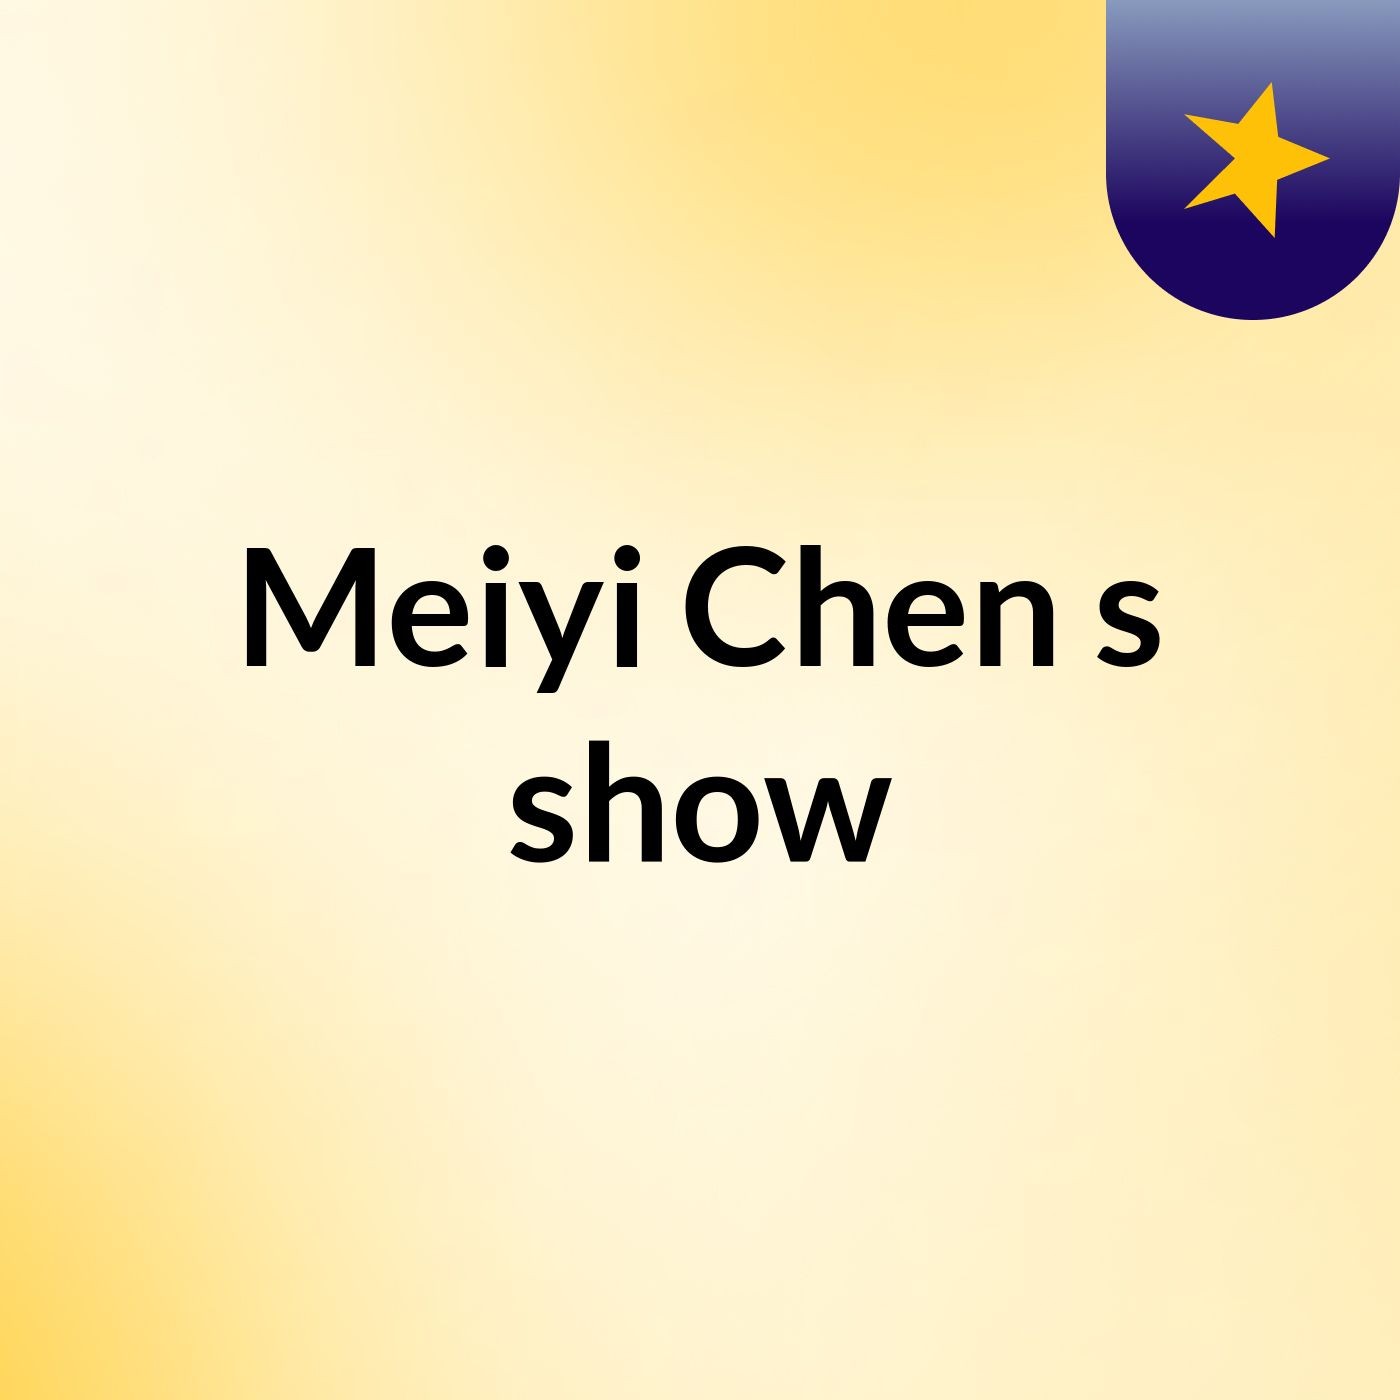 Meiyi Chen's show